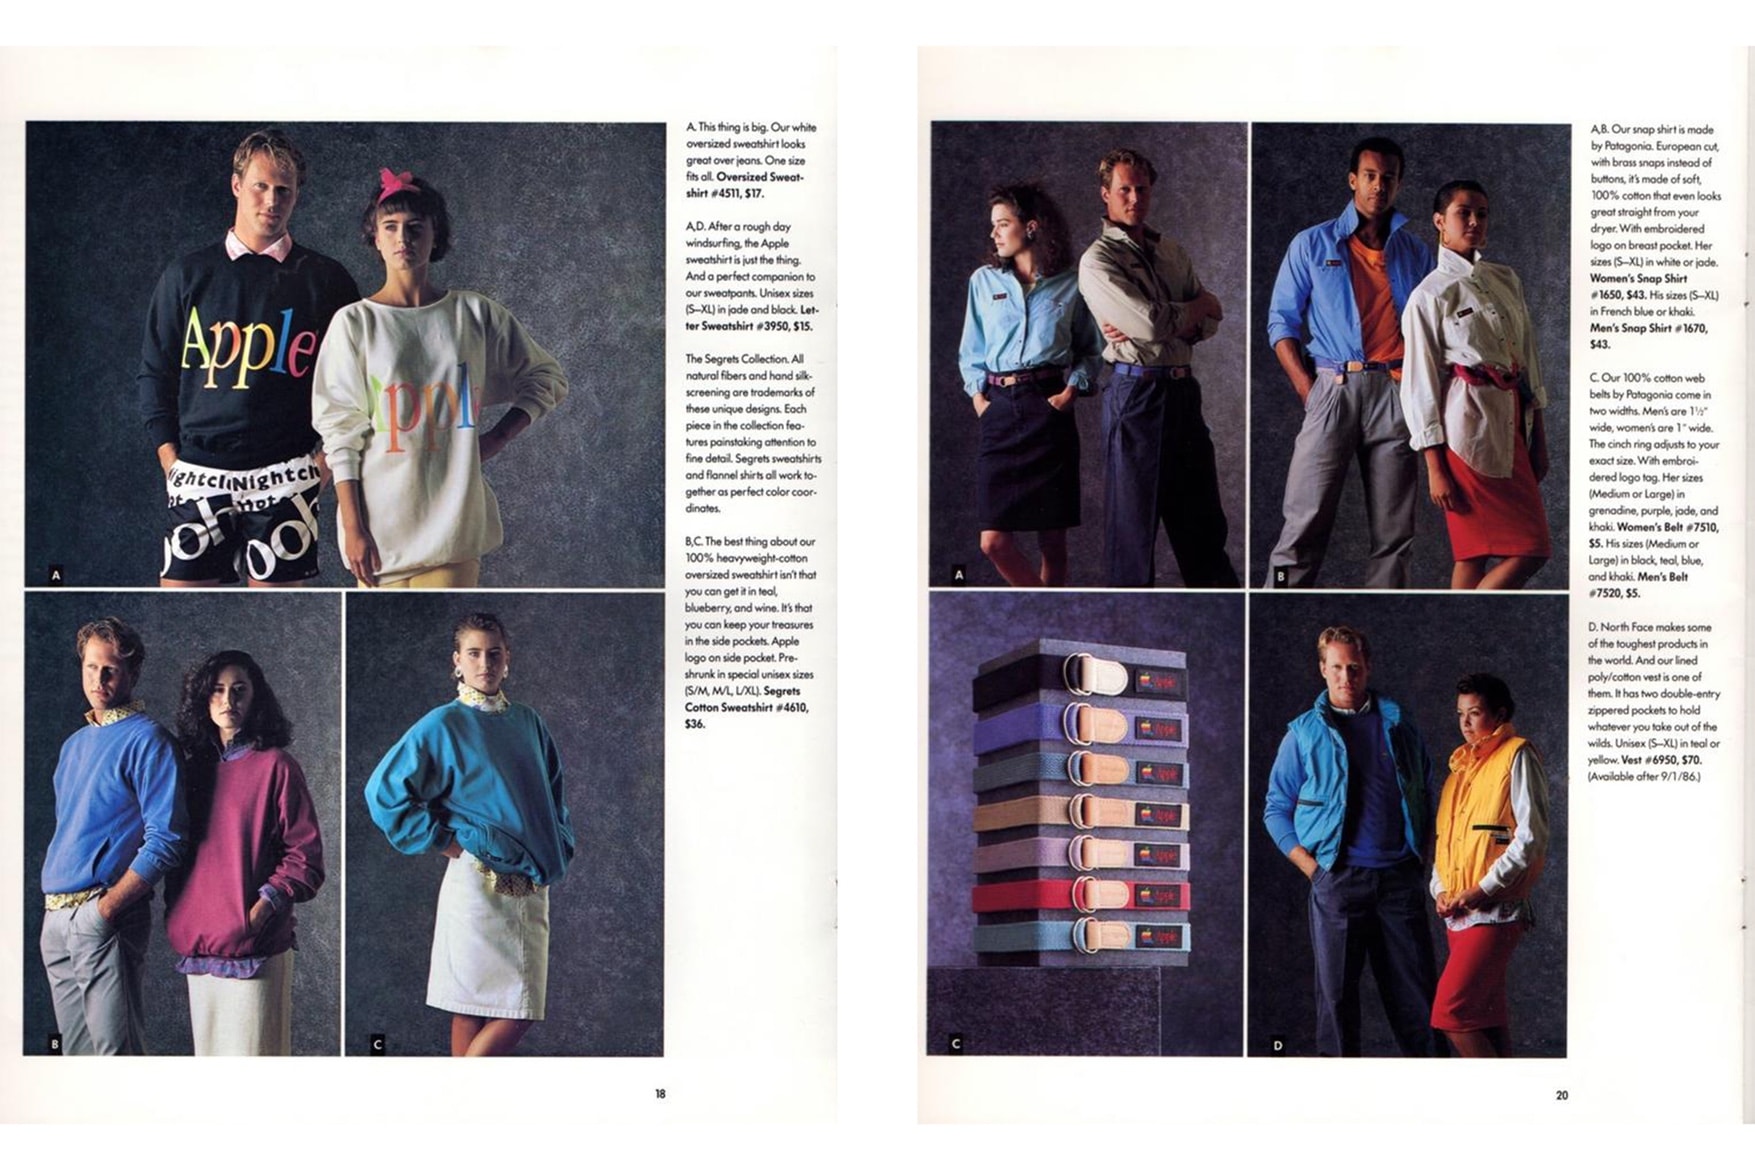 回顧 Apple 於 1986 年推出的服裝系列